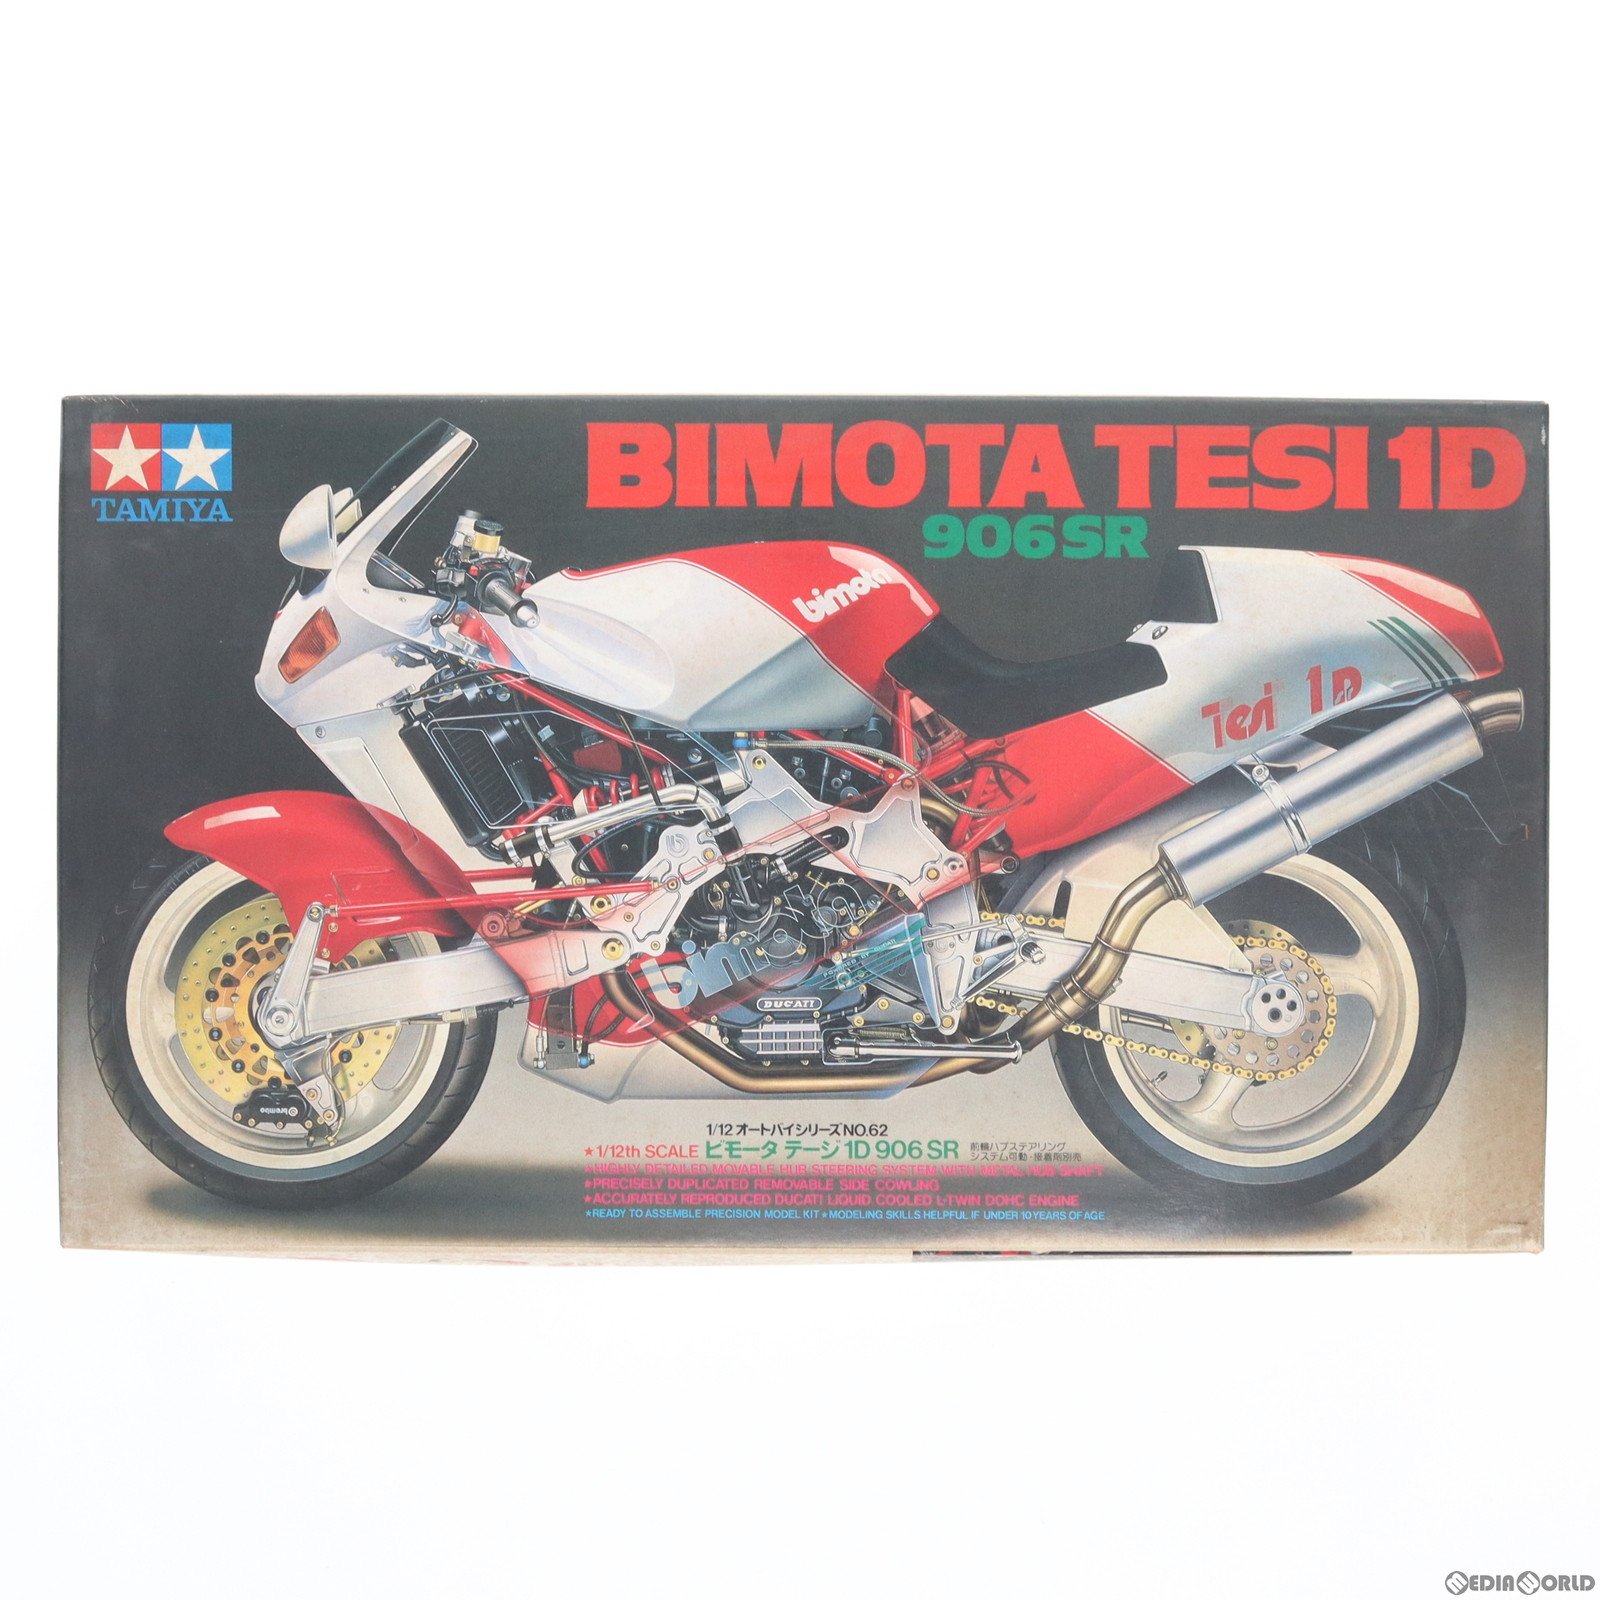 【中古】[PTM]オートバイシリーズ NO.62 1/12 ビモータテージ 1D 906SR プラモデル(14062) タミヤ(19991231)